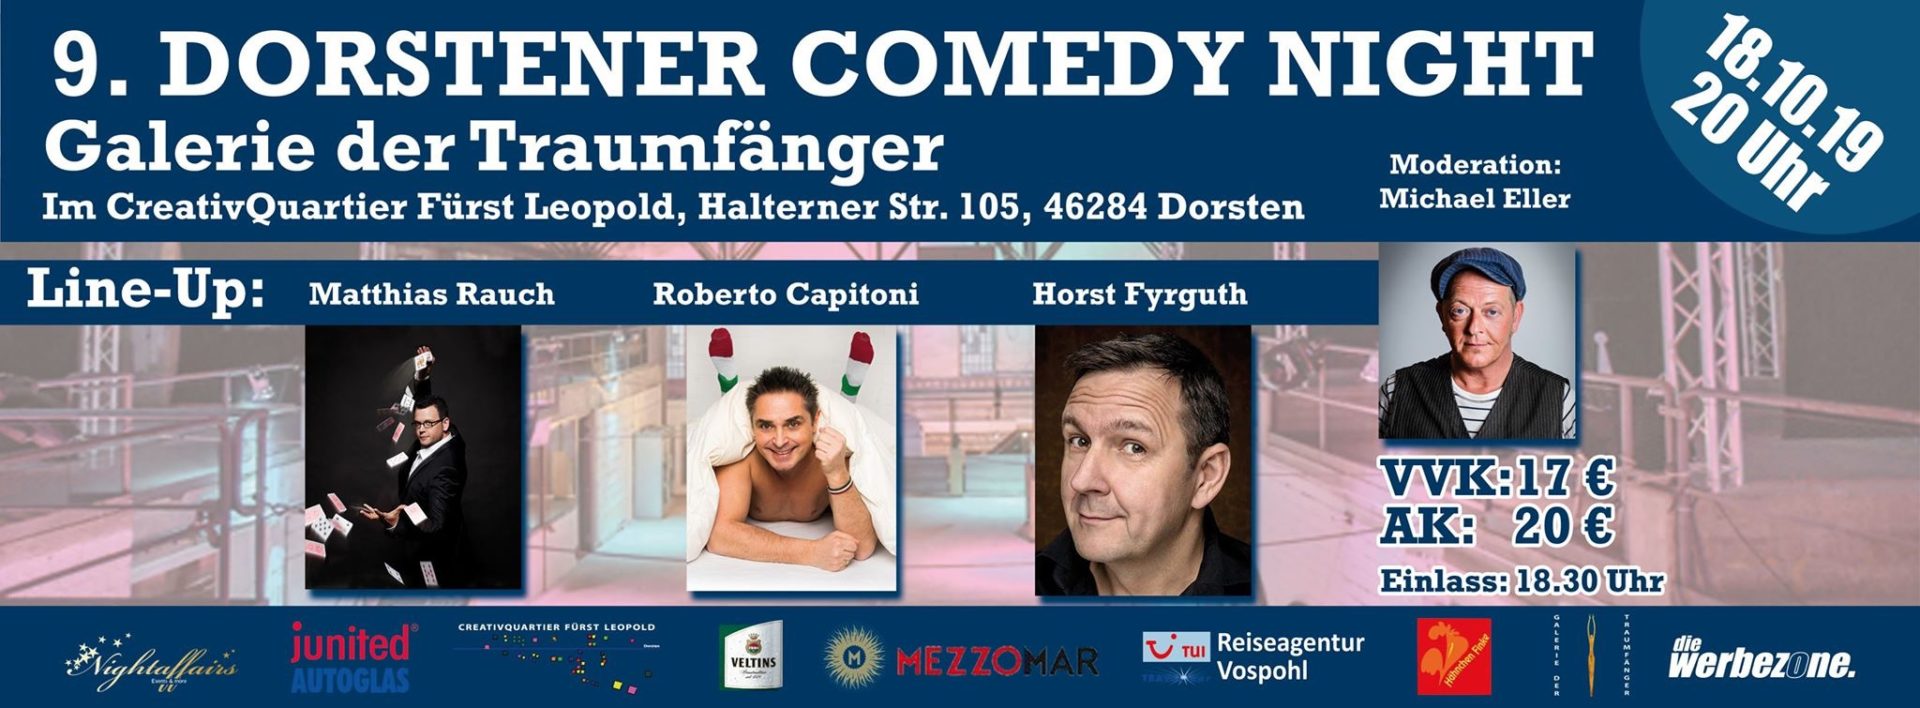 9. Dorstener Comedy Night am 18. Oktober im CreativQuartier Fürst Leopold